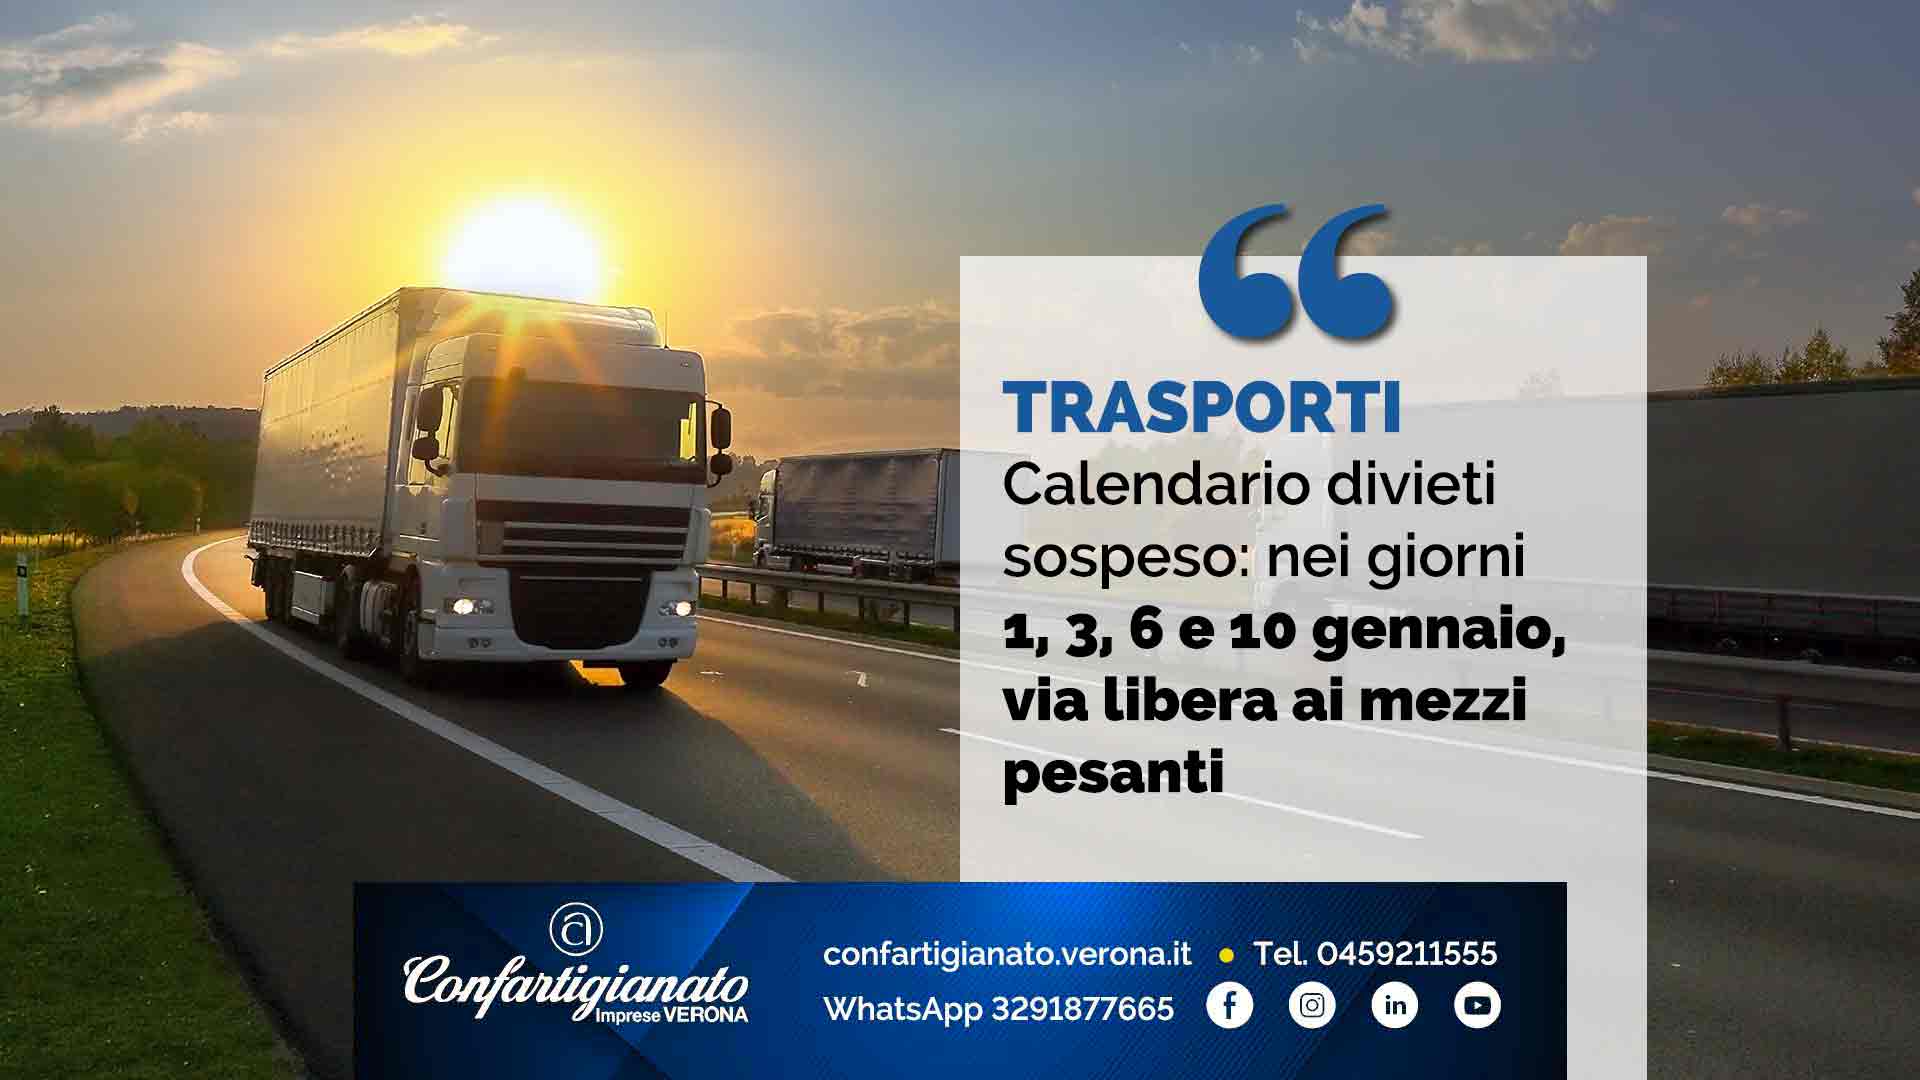 TRASPORTI – Calendario divieti sospeso: nei giorni 1, 3, 6 e 10 gennaio, via libera ai mezzi pesanti